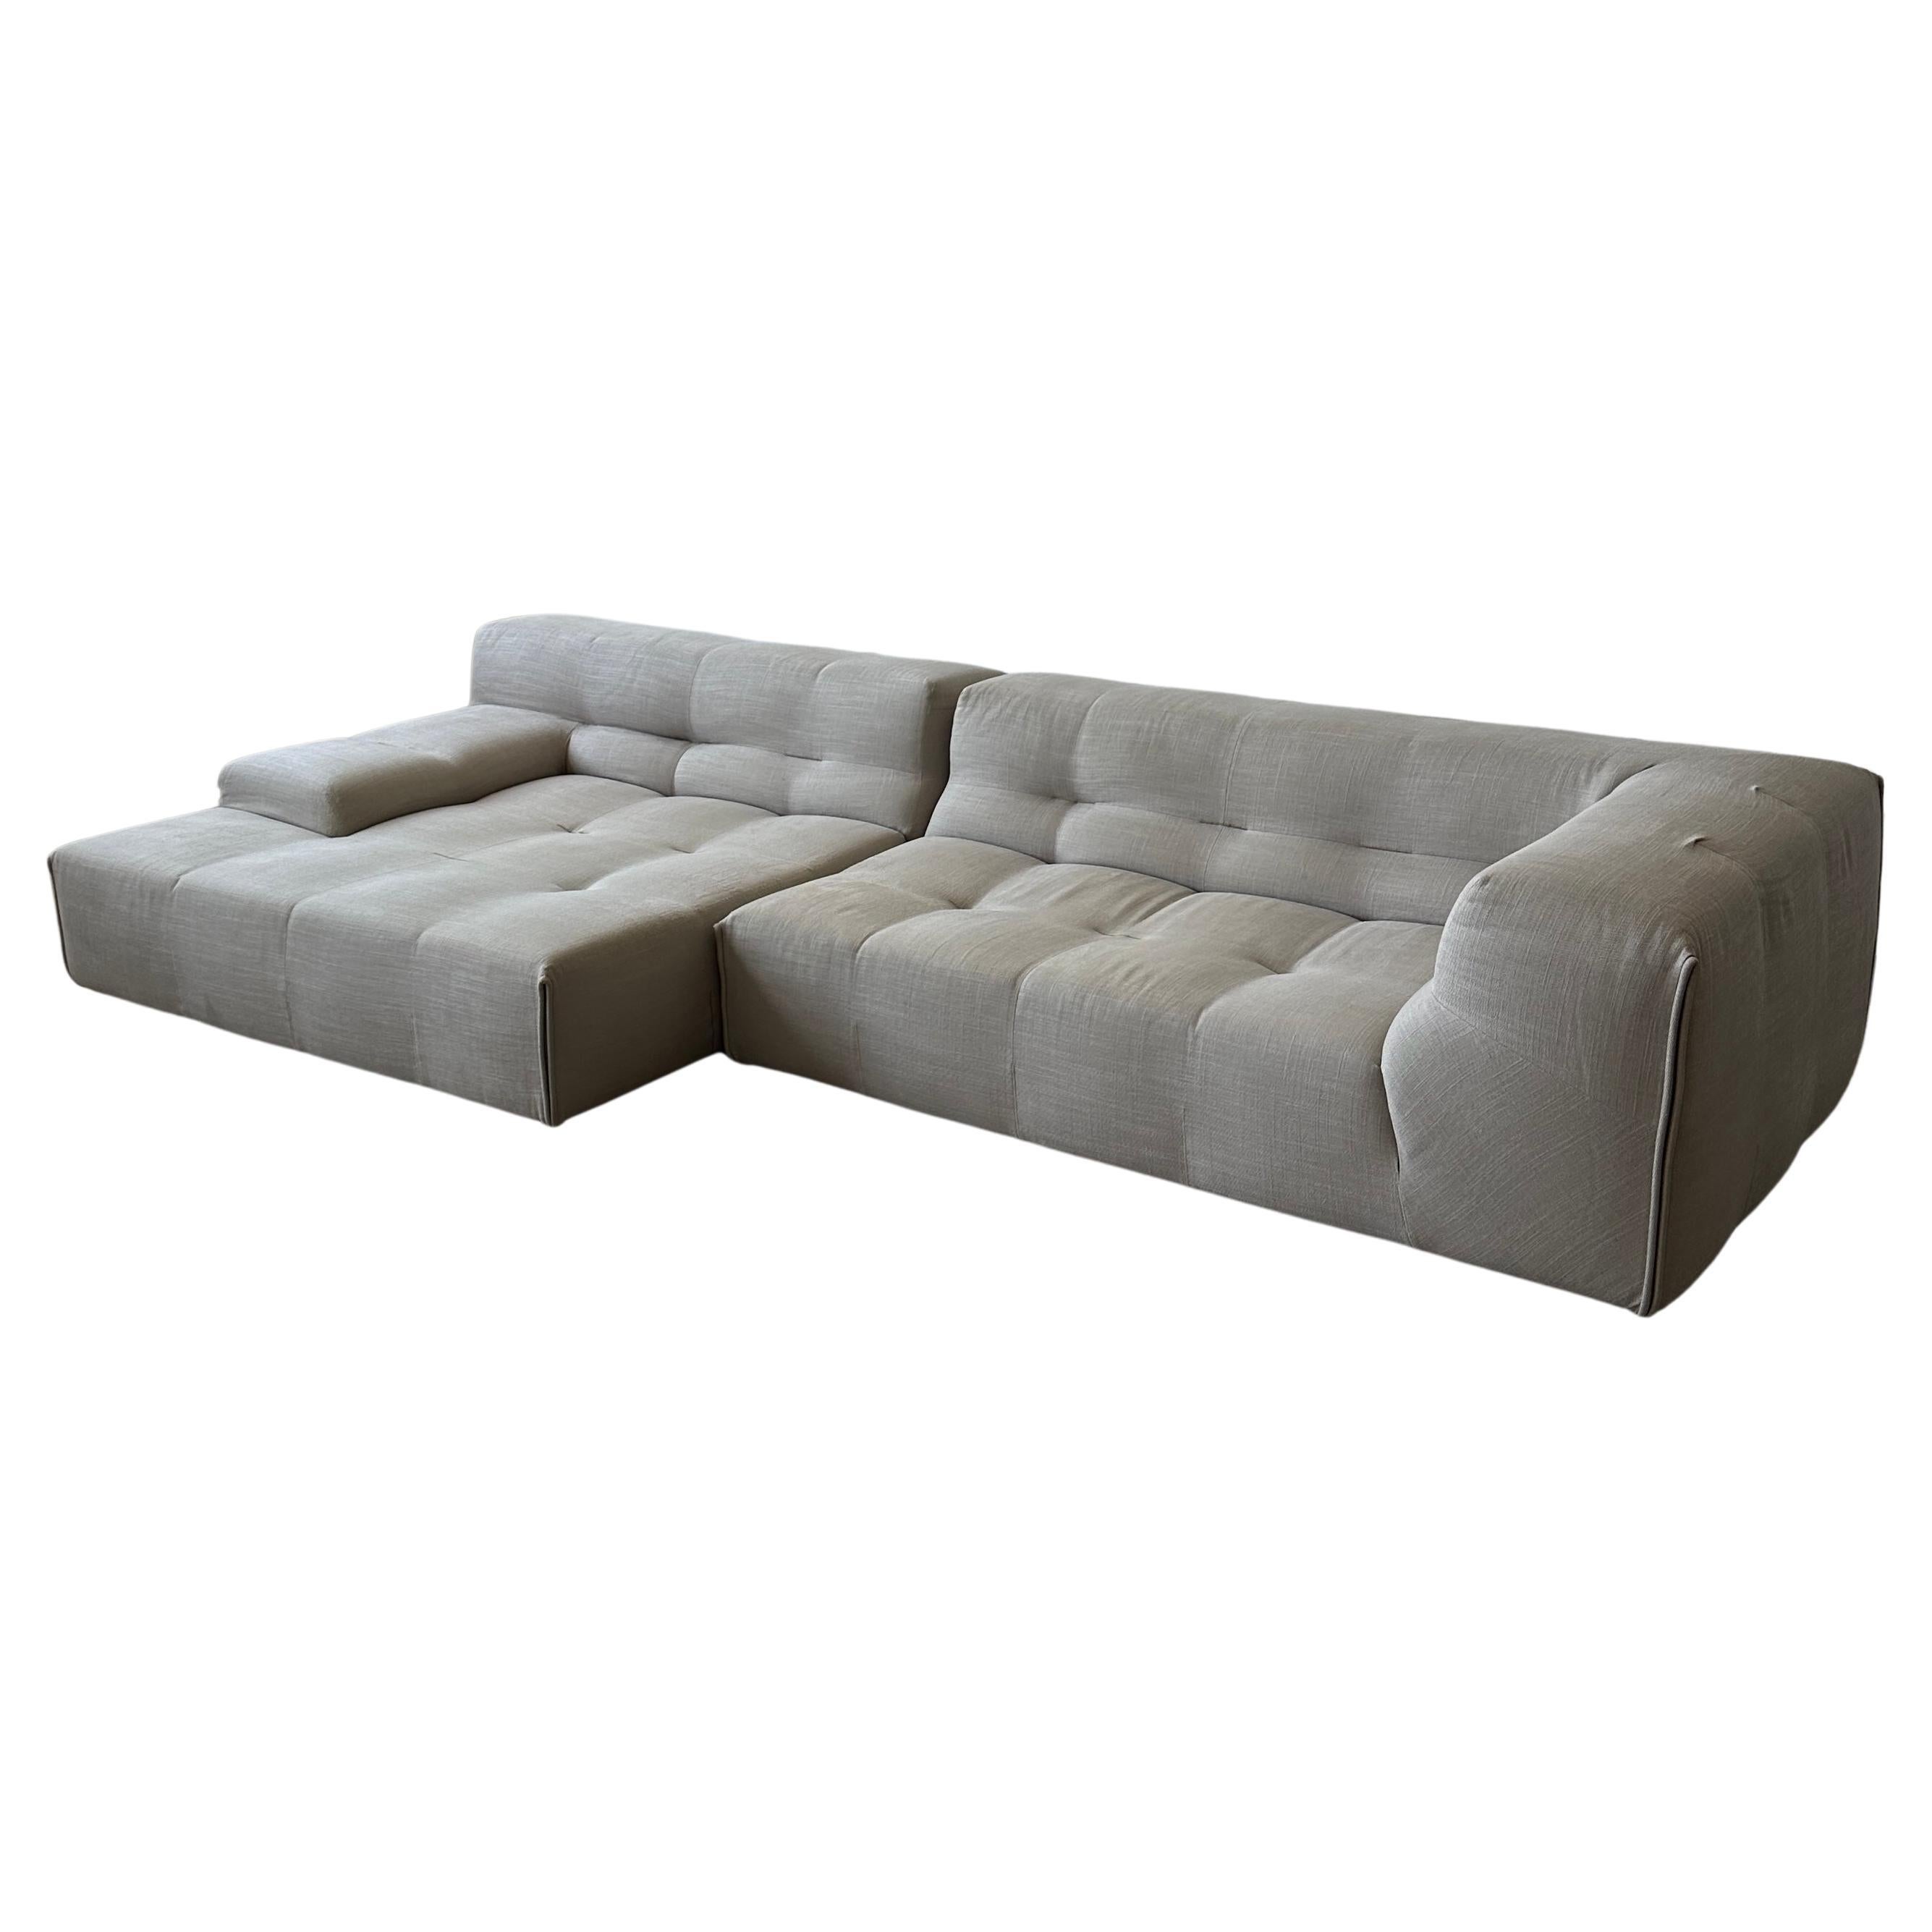 B&B Italia “Tufty Time” Sofa For Sale